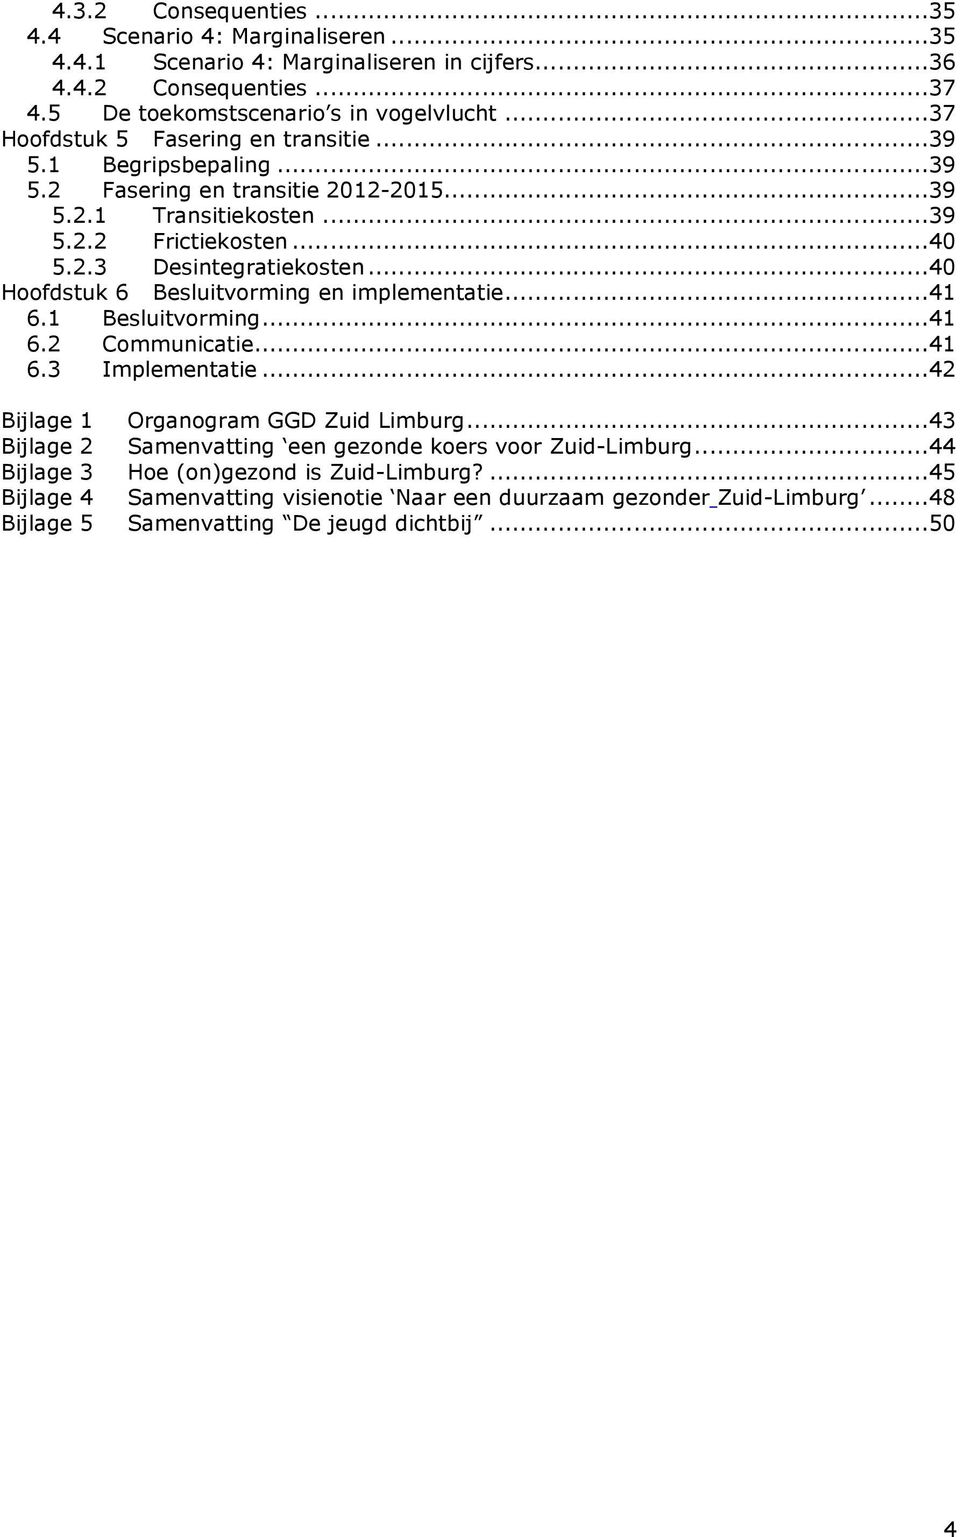 ..40 Hoofdstuk 6 Besluitvorming en implementatie...41 6.1 Besluitvorming...41 6.2 Communicatie...41 6.3 Implementatie...42 Bijlage 1 Organogram GGD Zuid Limburg.